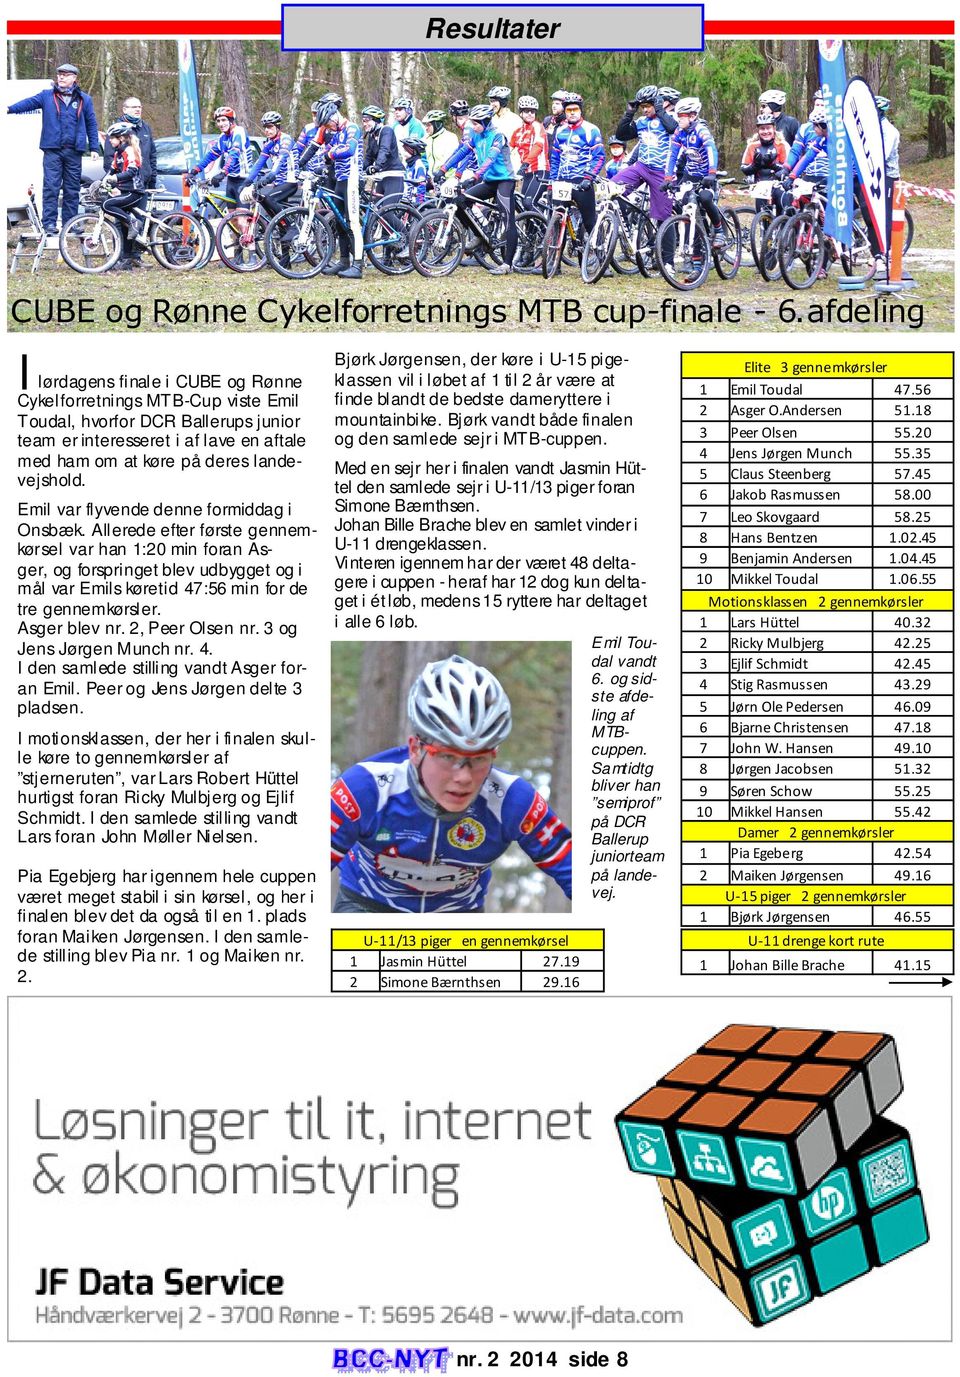 Bjørk Jørgensen, der køre i U-15 pigeklassen vil i løbet af 1 til 2 år være at finde blandt de bedste dameryttere i mountainbike. Bjørk vandt både finalen og den samlede sejr i MTB-cuppen.